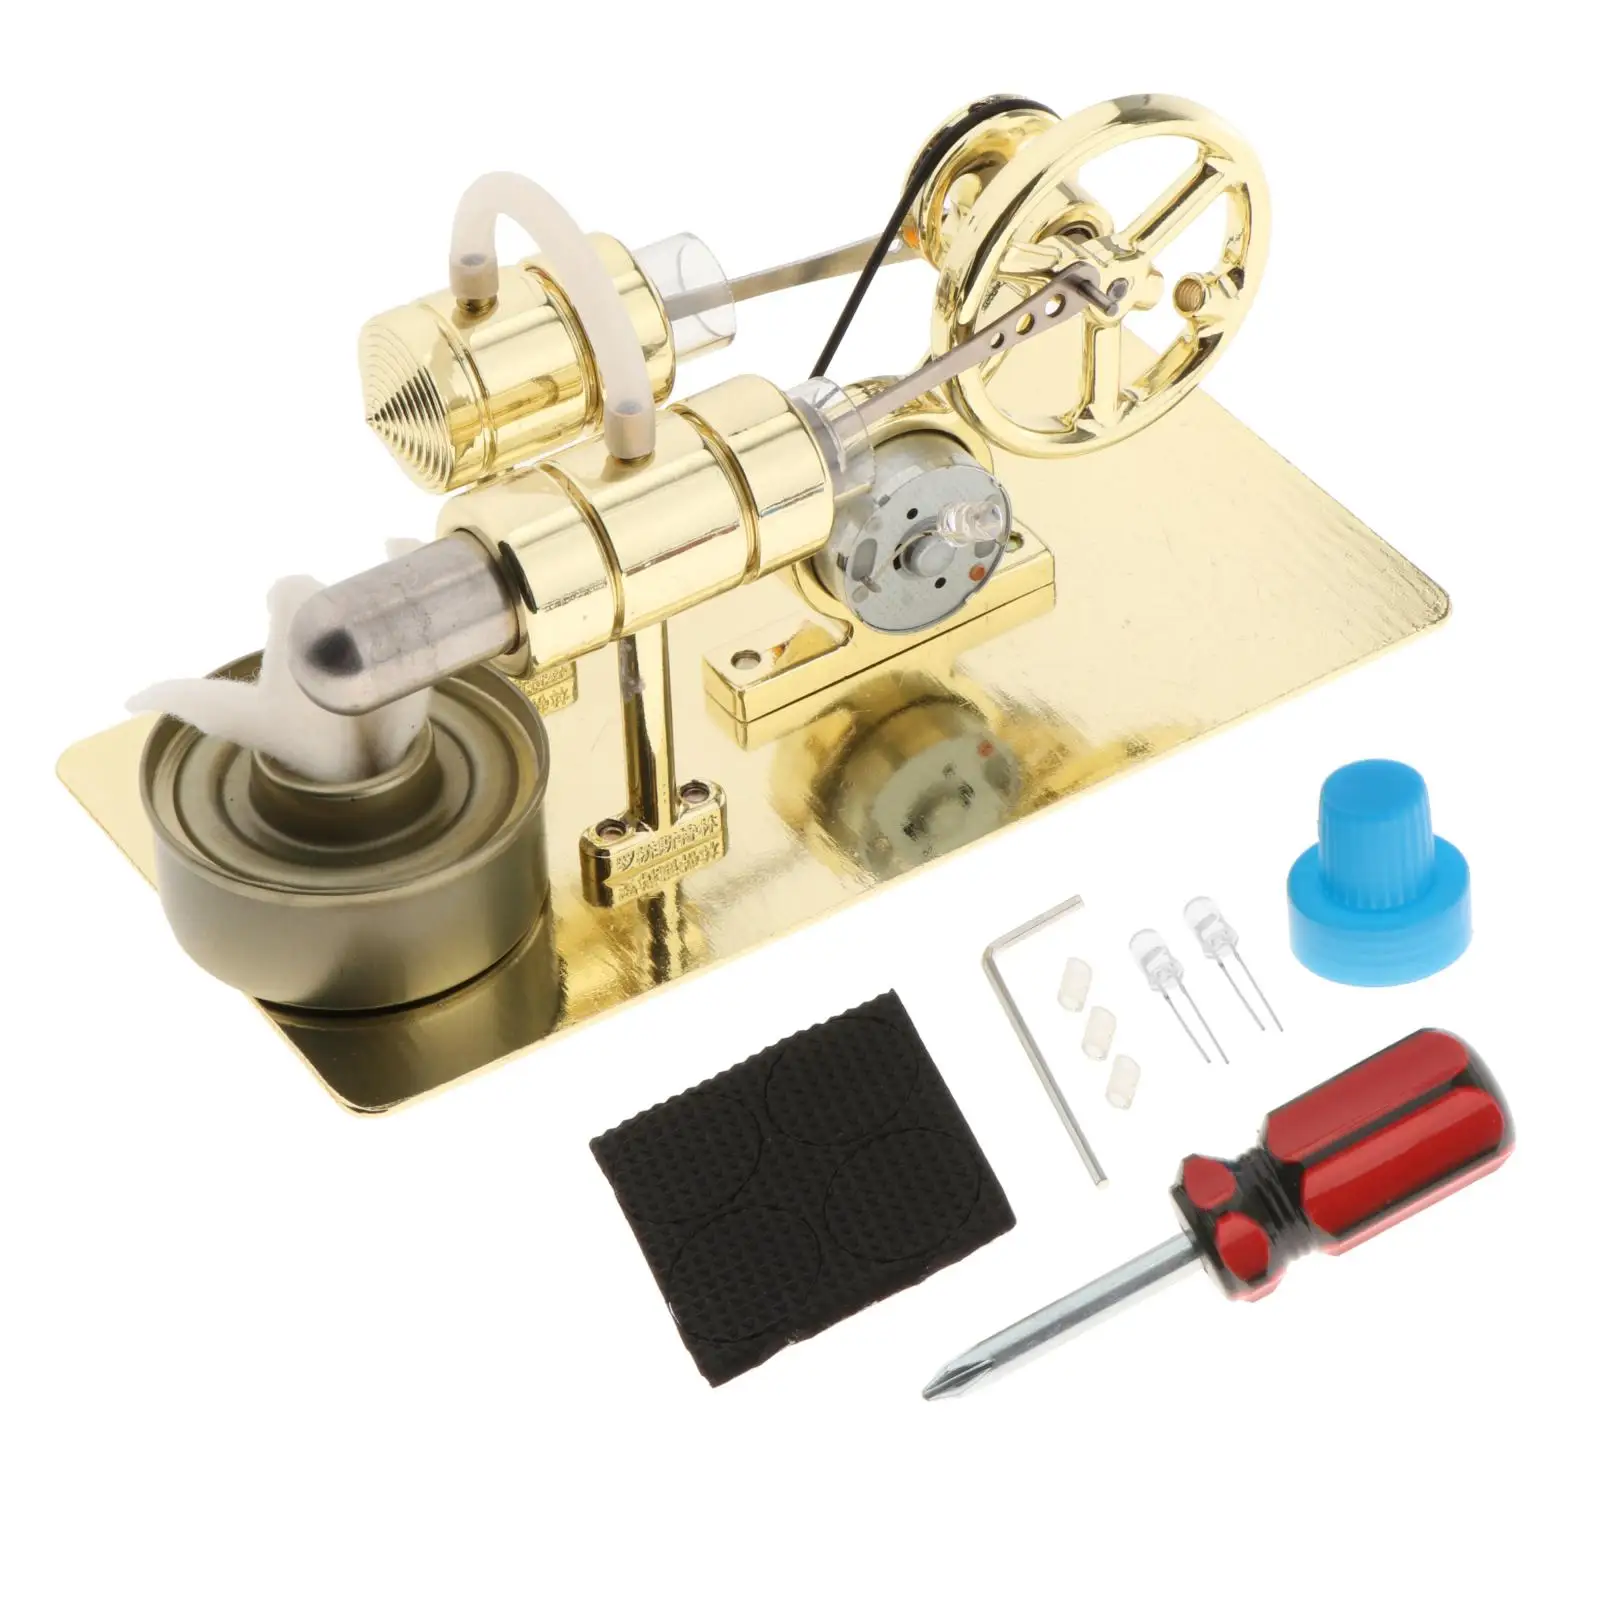 Elétrico, Física Steam Power Toy, DIY Model Kit, Novo